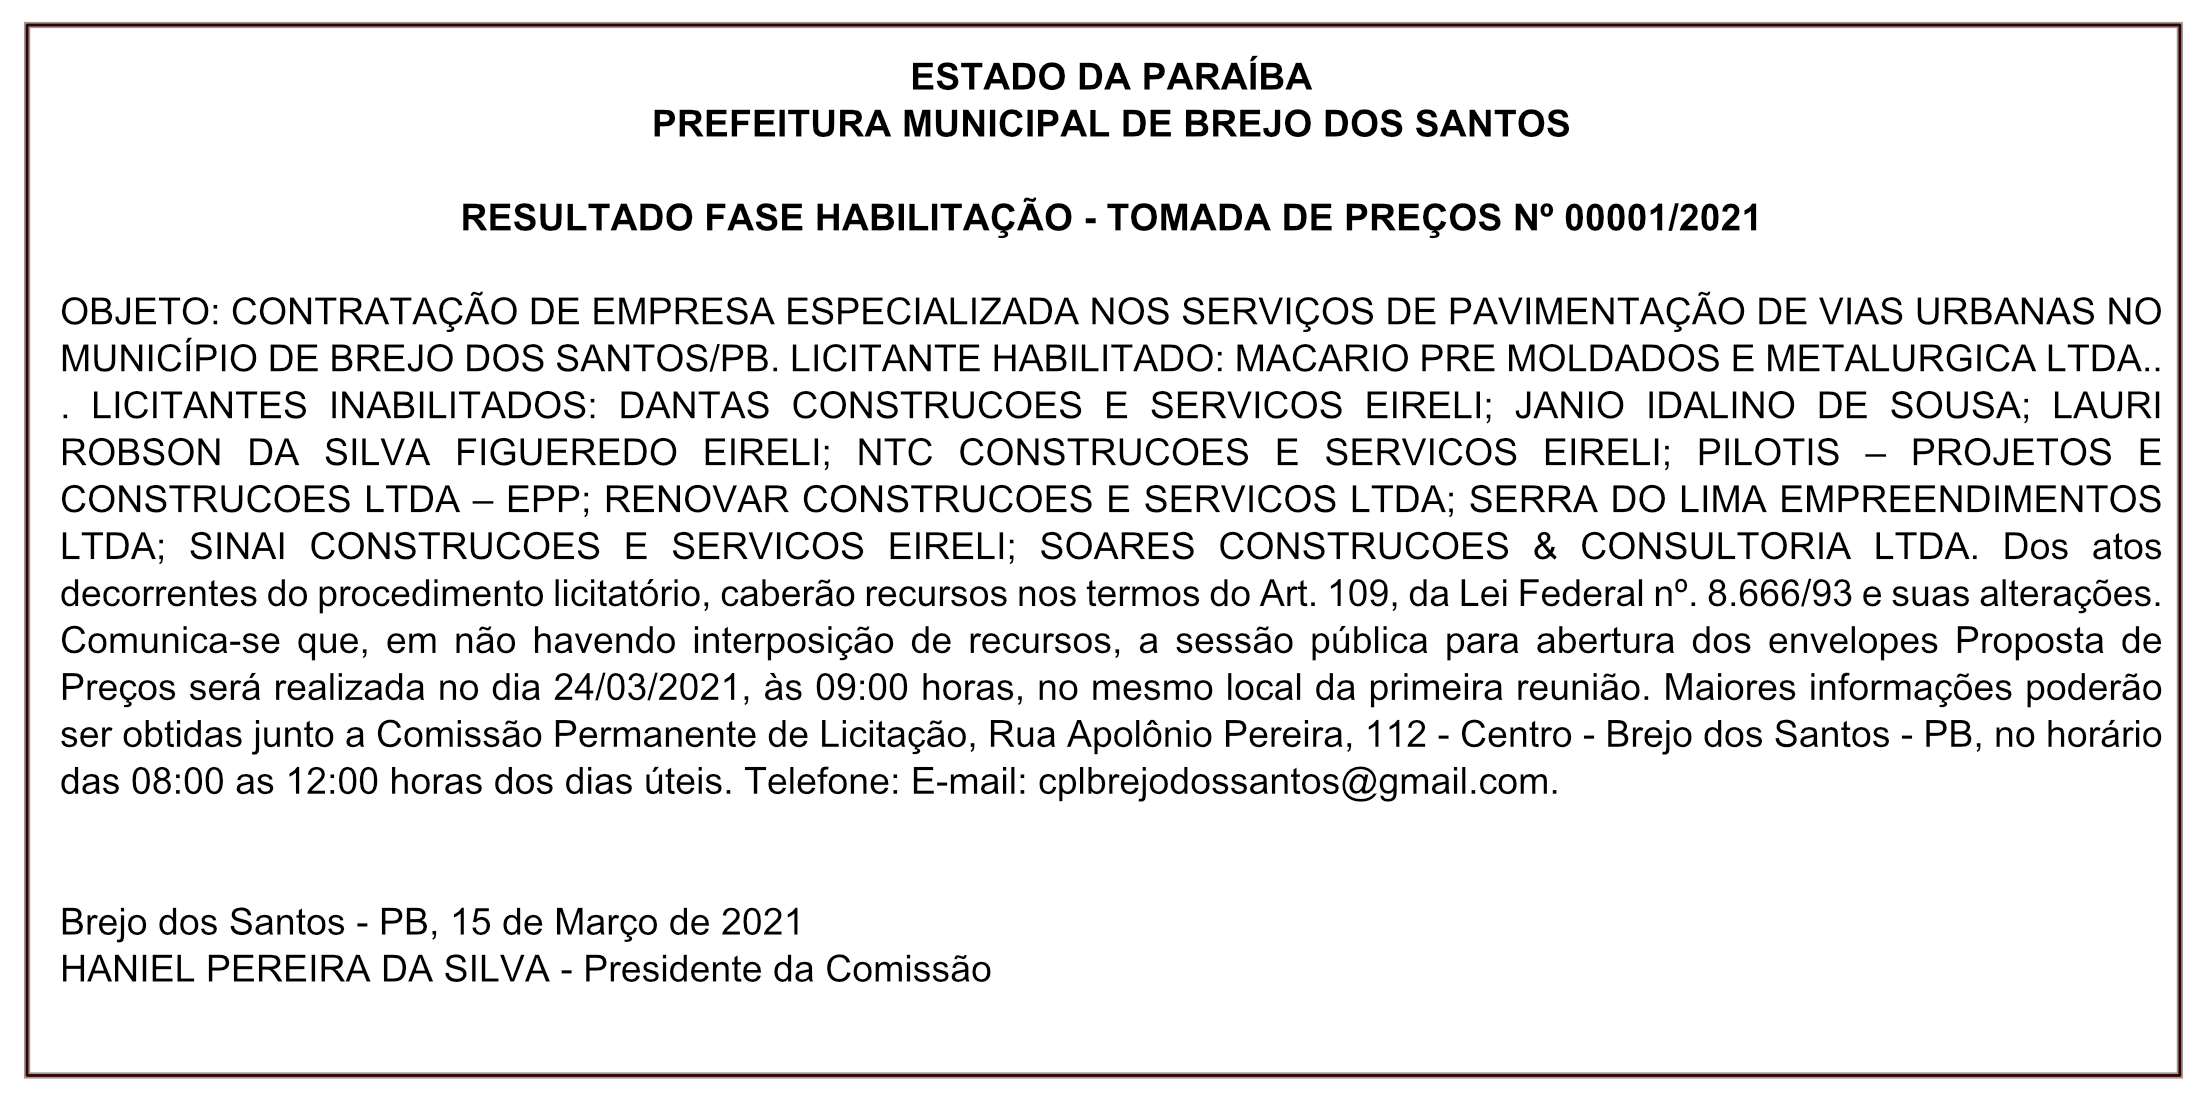 PREFEITURA MUNICIPAL DE BREJO DOS SANTOS – RESULTADO FASE HABILITAÇÃO – TOMADA DE PREÇOS Nº 00001/2021